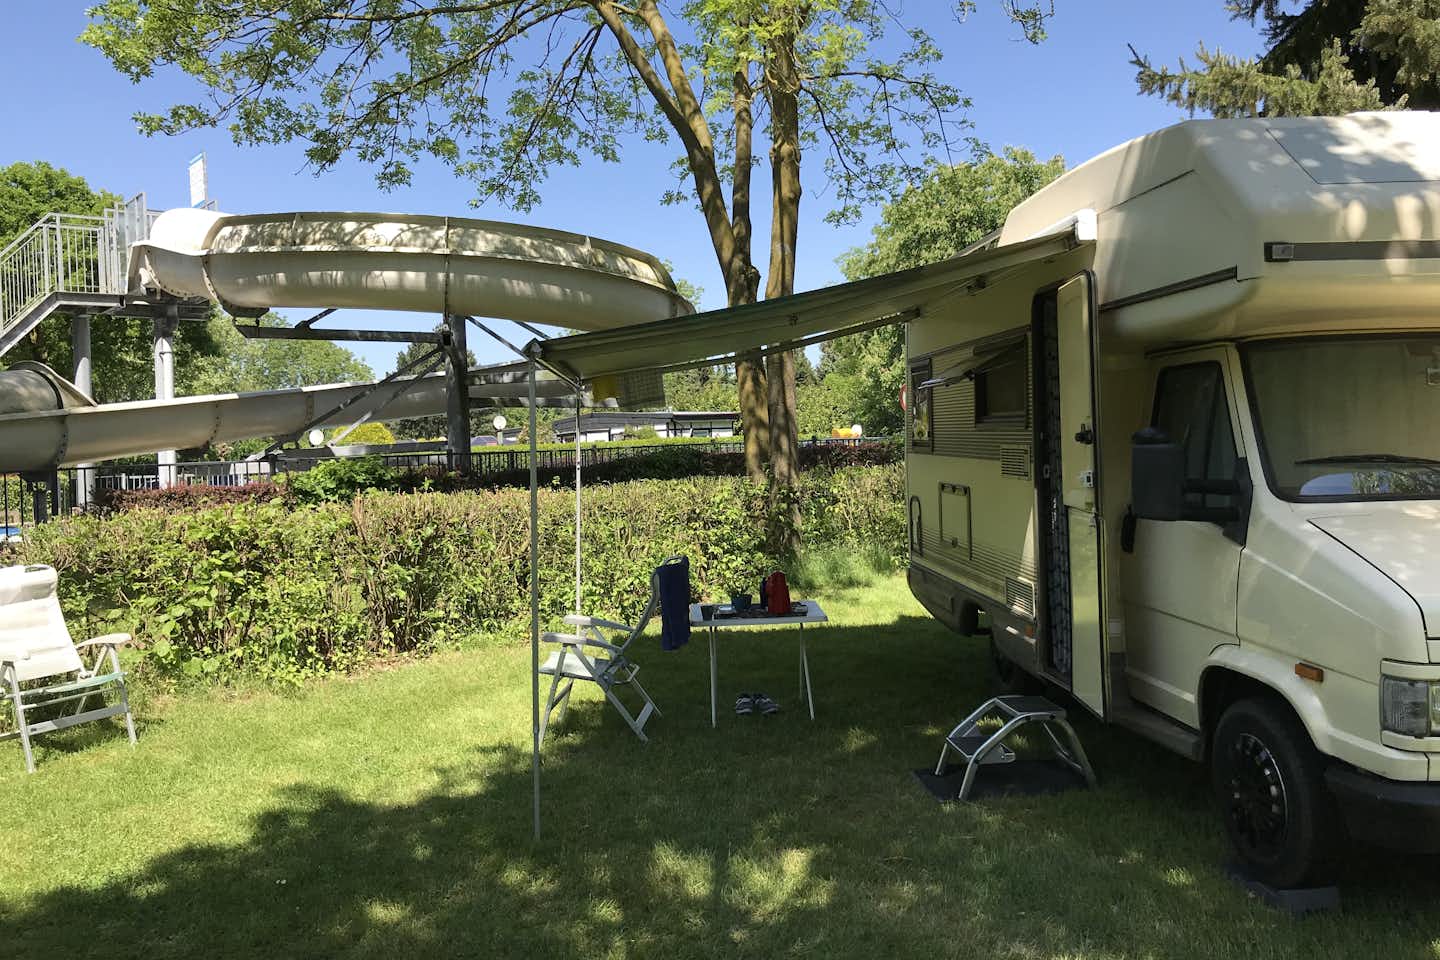 Recreatiepark Kasteel Ooijen  -  Wohnmobil auf dem Stellplatz vom Campingplatz mit Blick auf die Wasserrutsche vom Pool